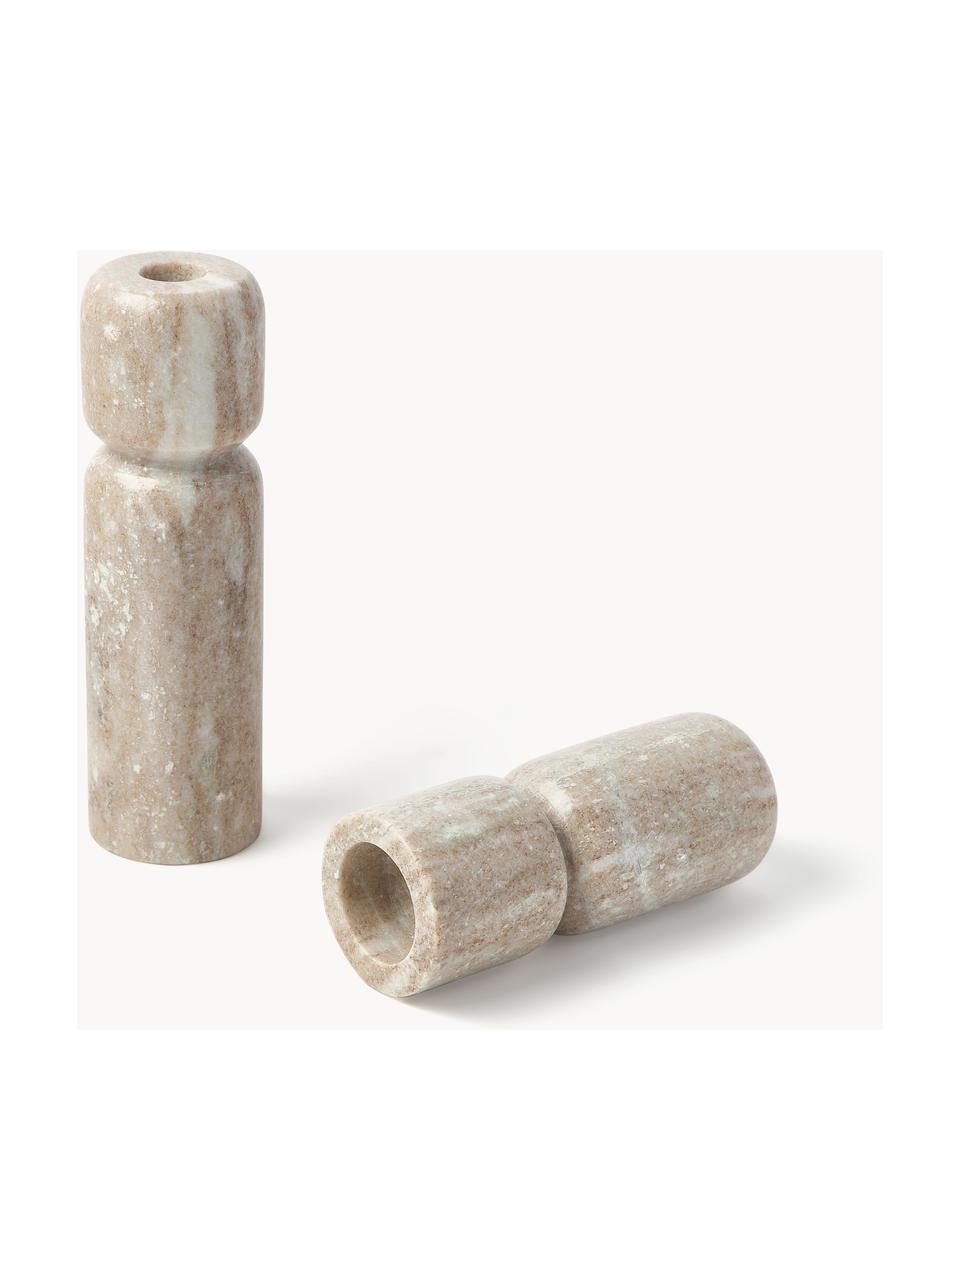 Súprava svietnikov z mramoru Como, 2 ks, Mramor
Keďže mramor je prírodný produkt, môžu sa vyskytnúť rozdiely vo farbe a v mramorovaní, Béžová, mramorovaná, Súprava s rôznymi veľkosťami